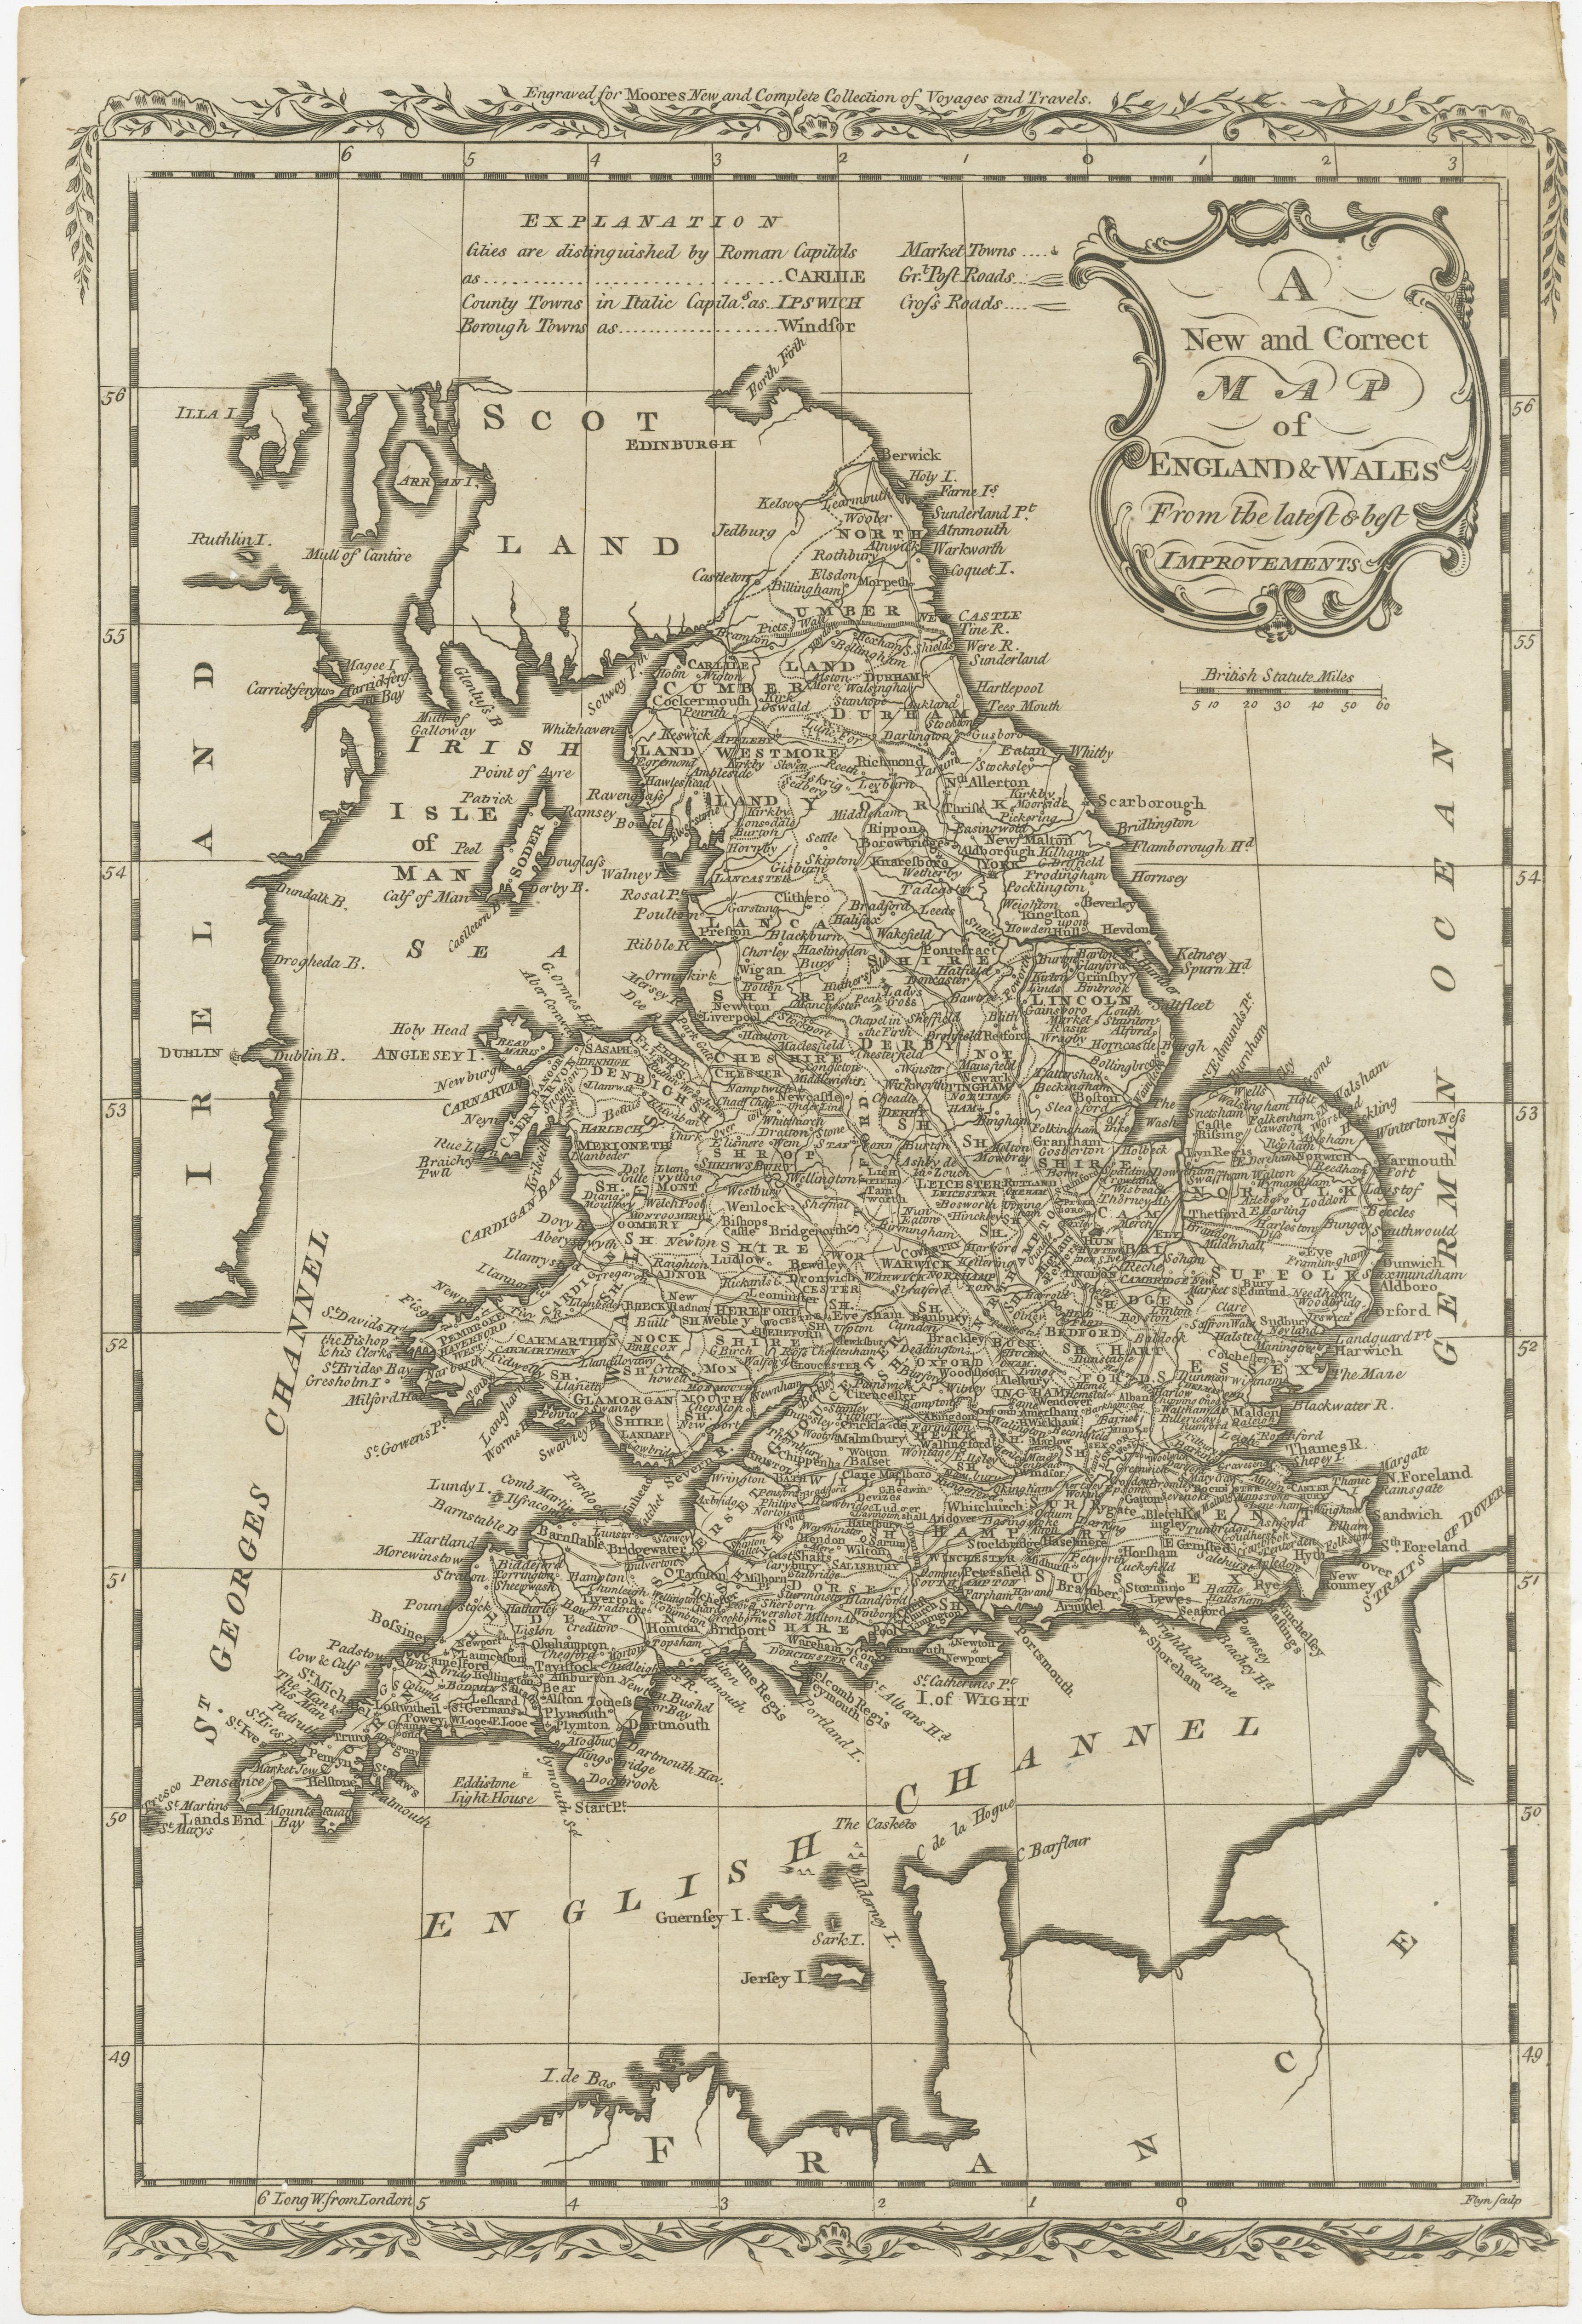 Carte ancienne intitulée 'A New and Correct Map of England and Wales from the Latest and Best Improvements'. Carte originale ancienne de l'Angleterre et du Pays de Galles. Imprimé par Alex Hogg, Londres, pour le 